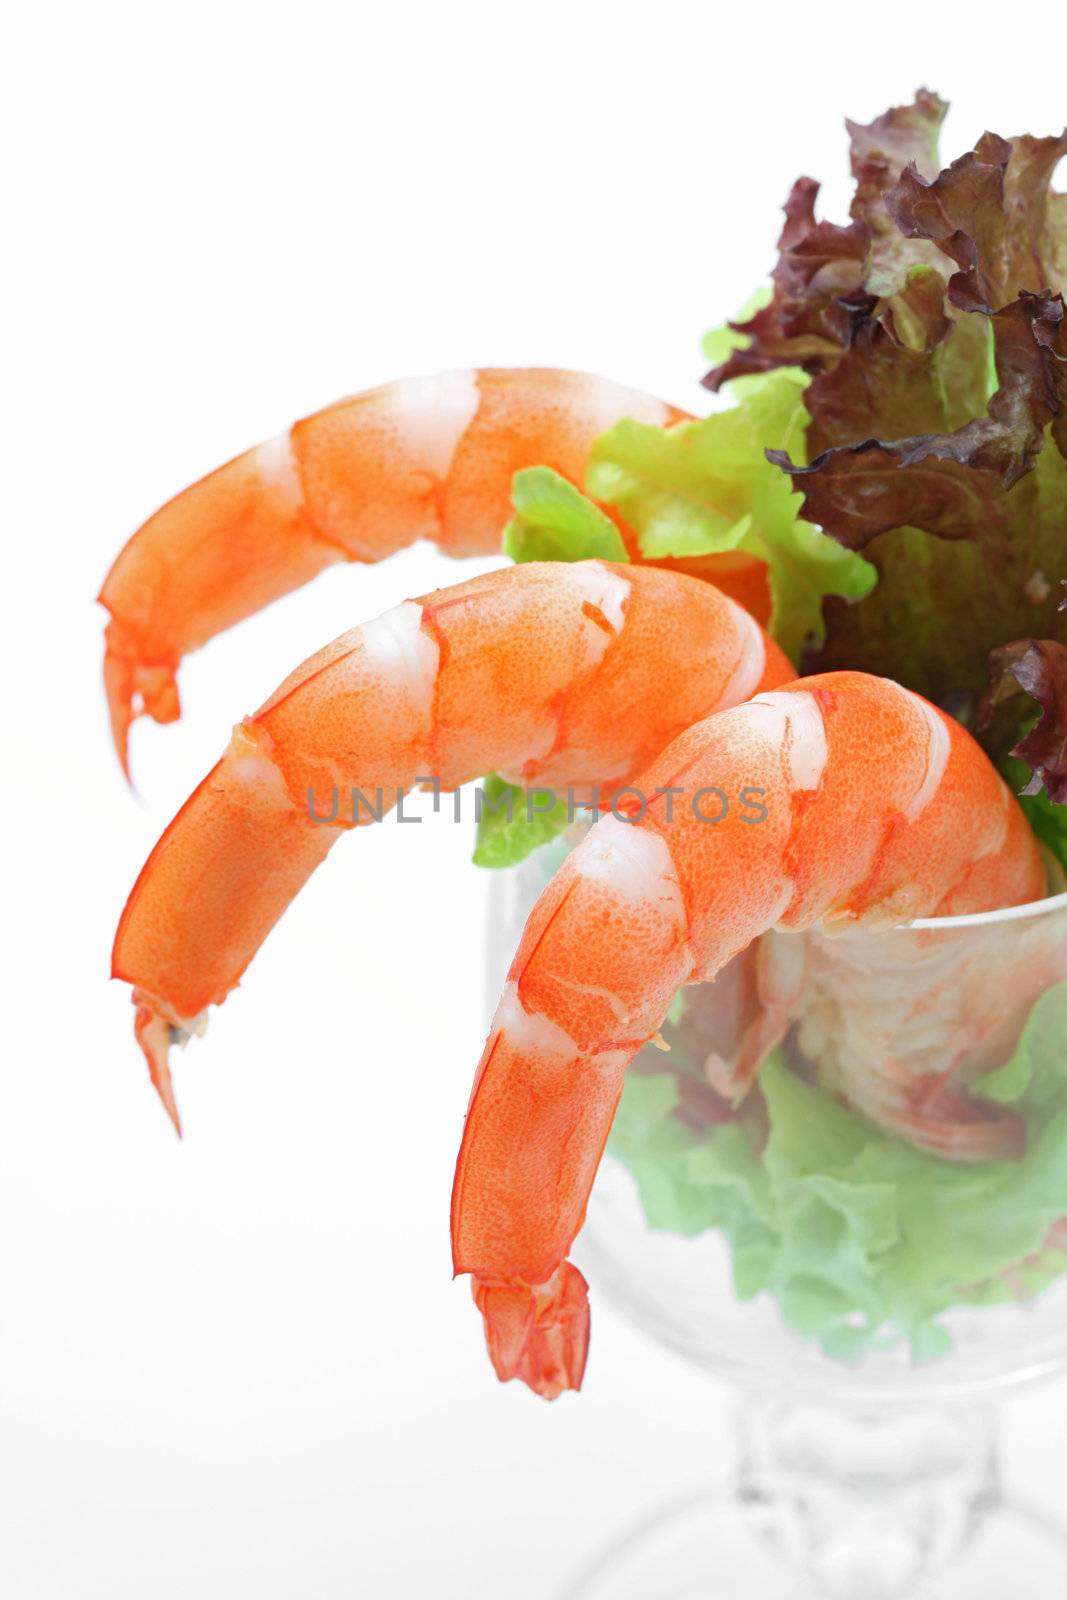 Shrimp cocktail salad by vichie81